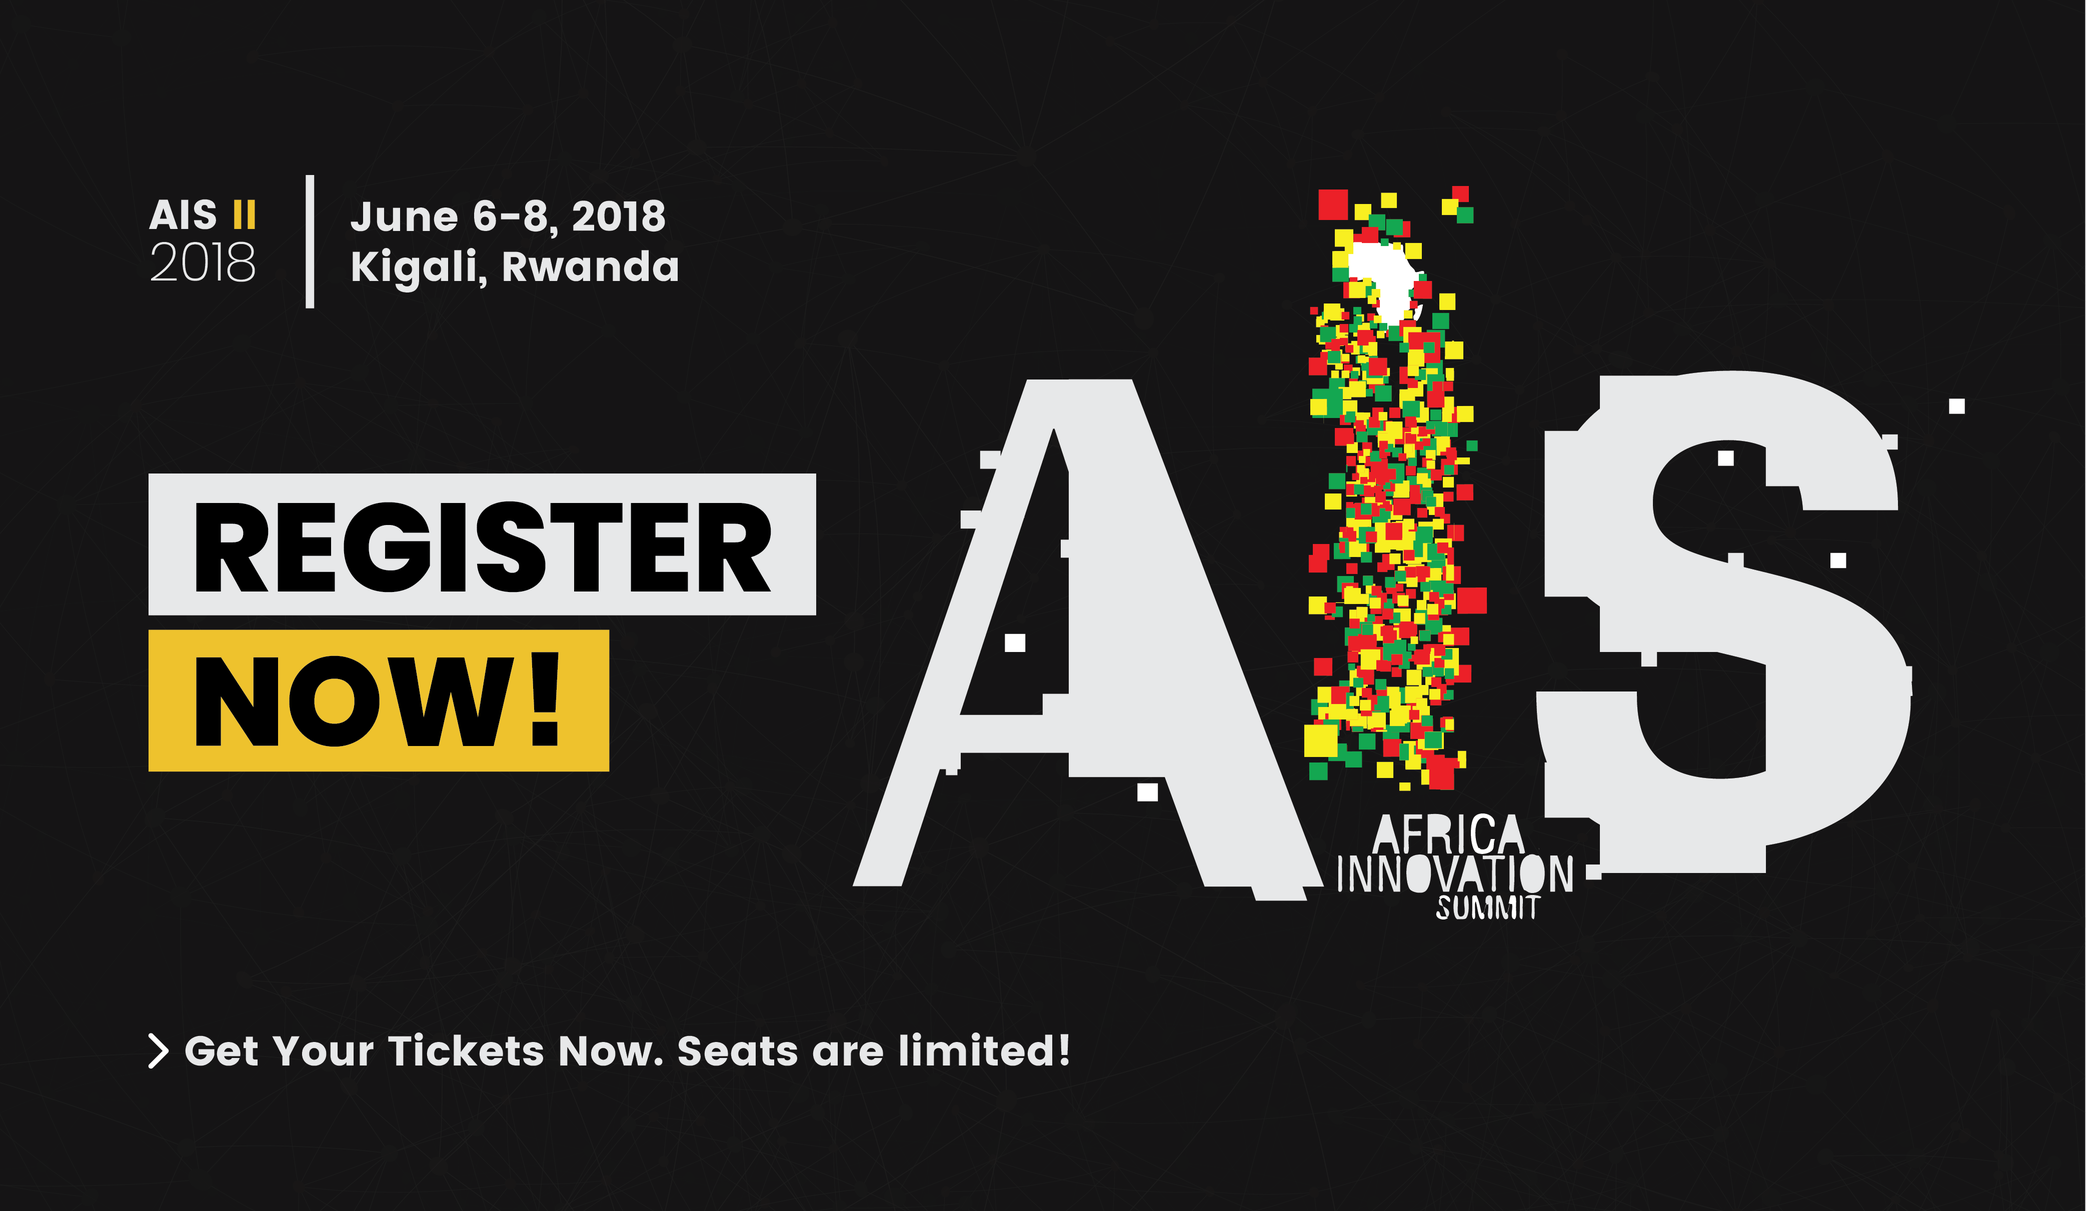 #AIS2018 - Registration Announcement